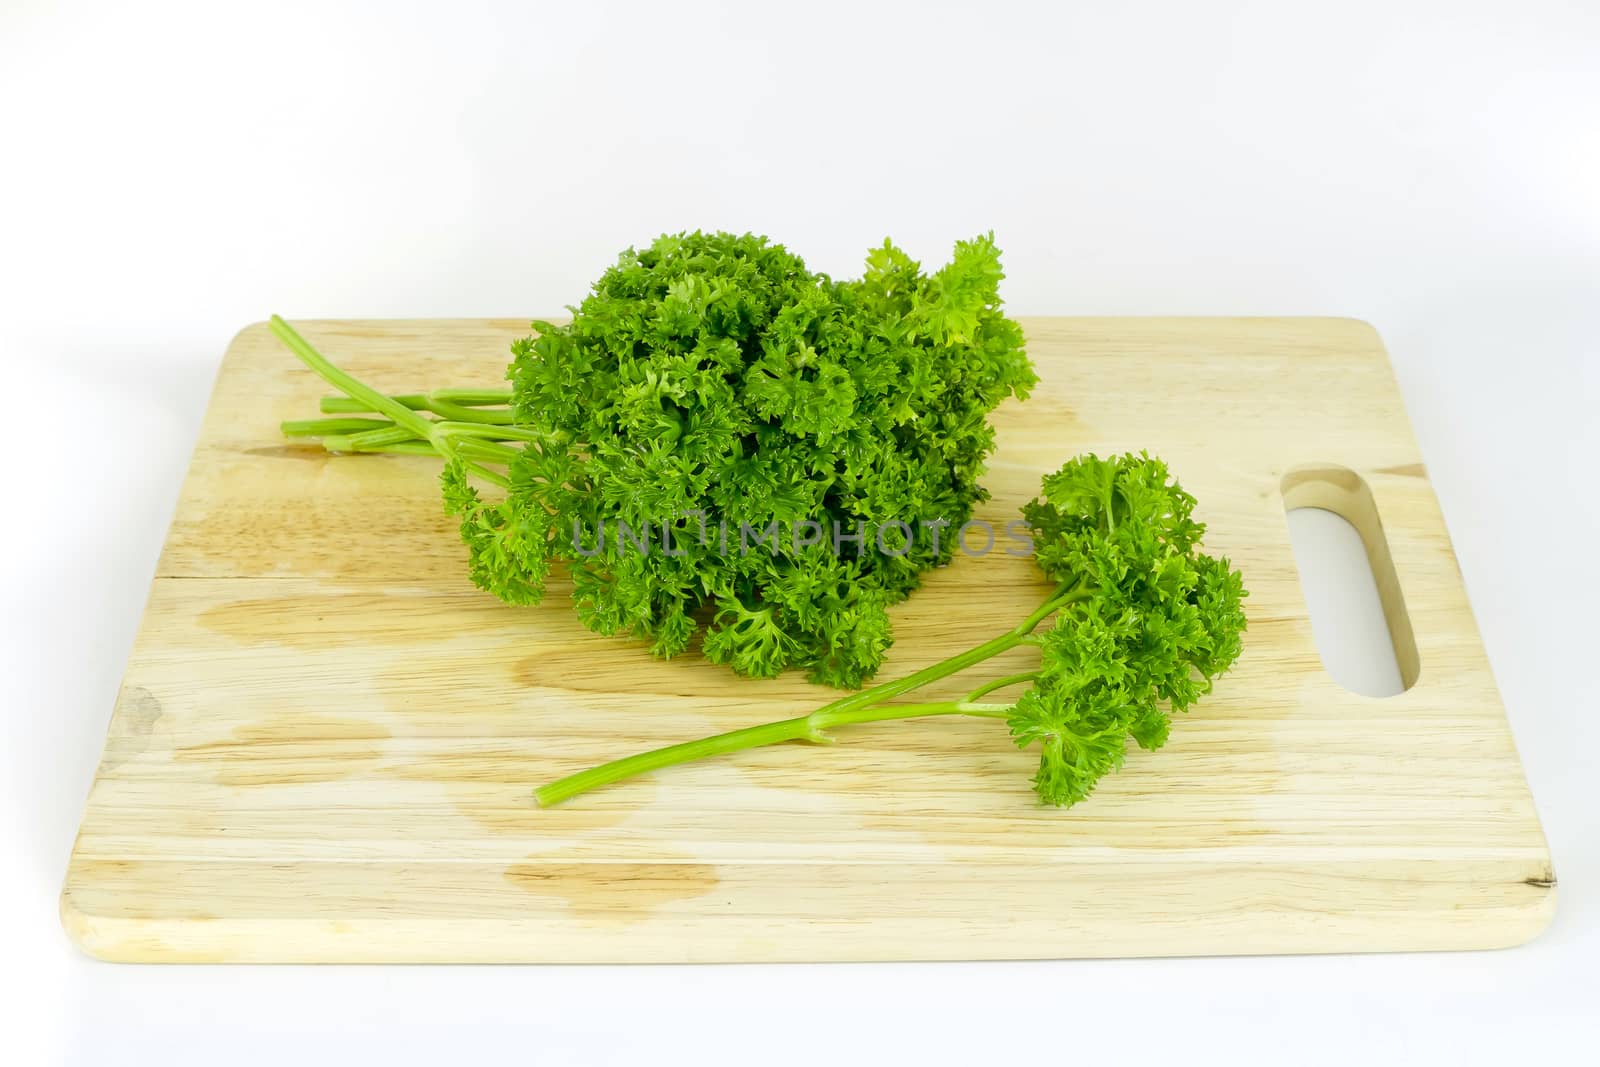 parsley on cutting board by art9858